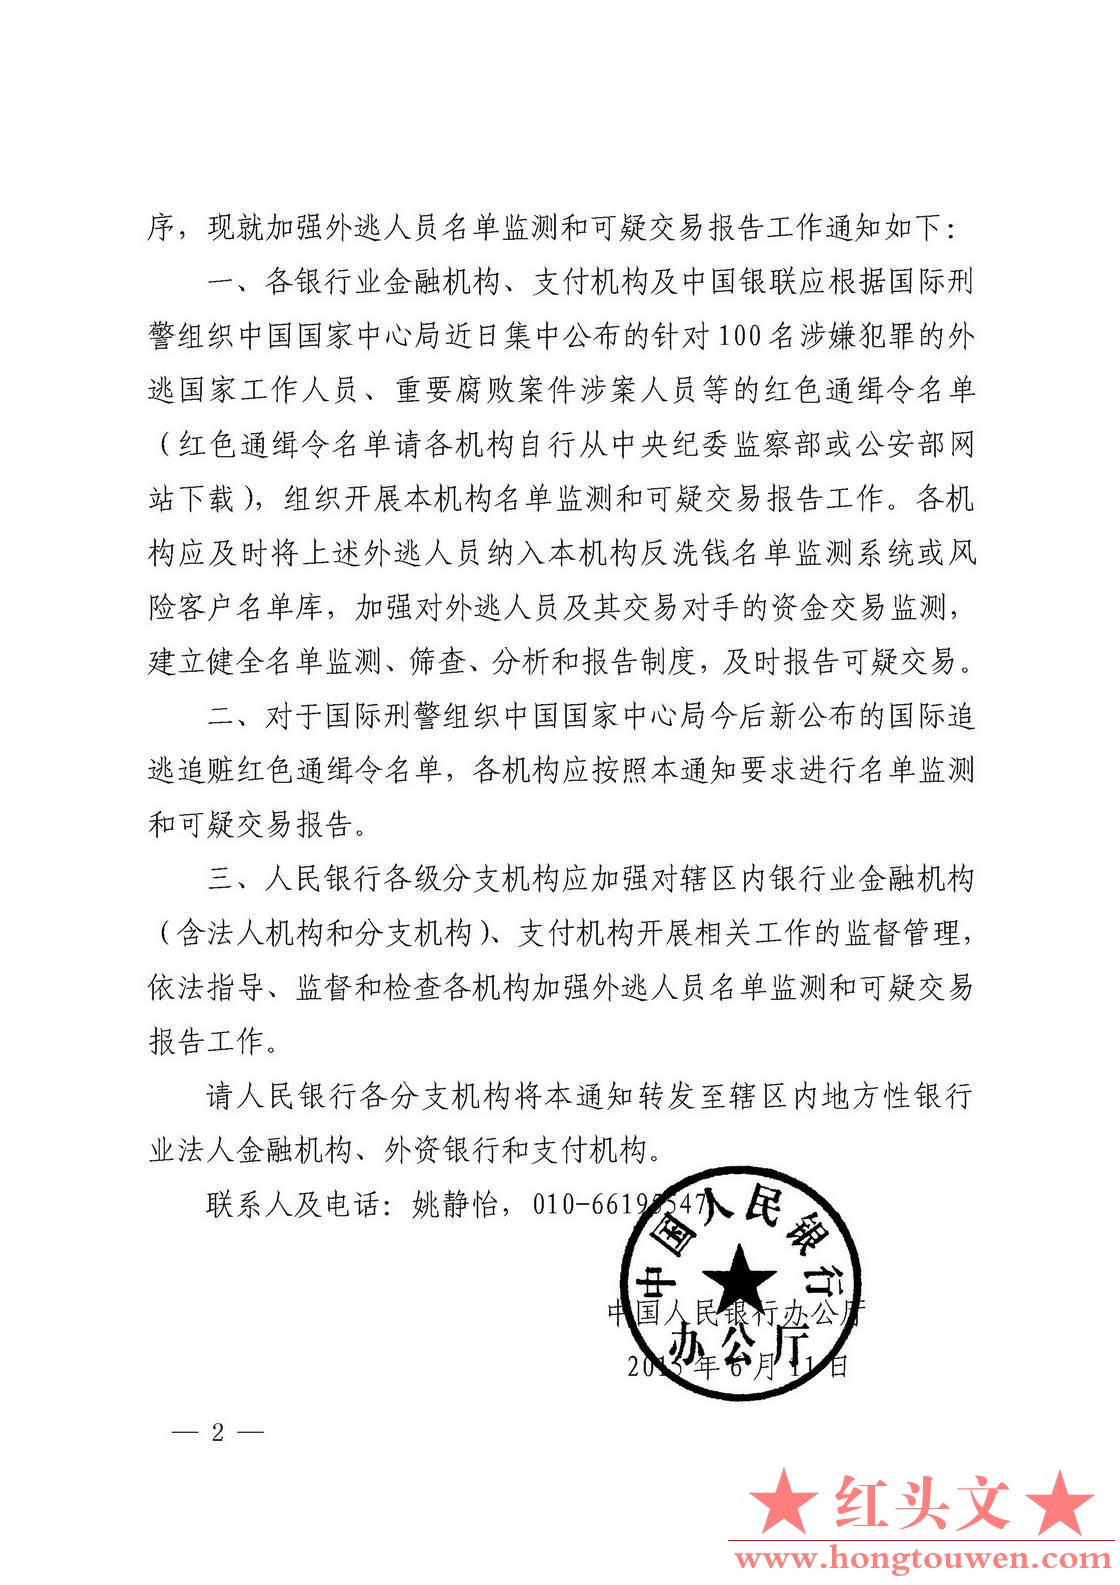 银办发[2015]135号-中国人民银行办公厅关于加强外逃人员名单监测和可疑交易报告工作的.jpg